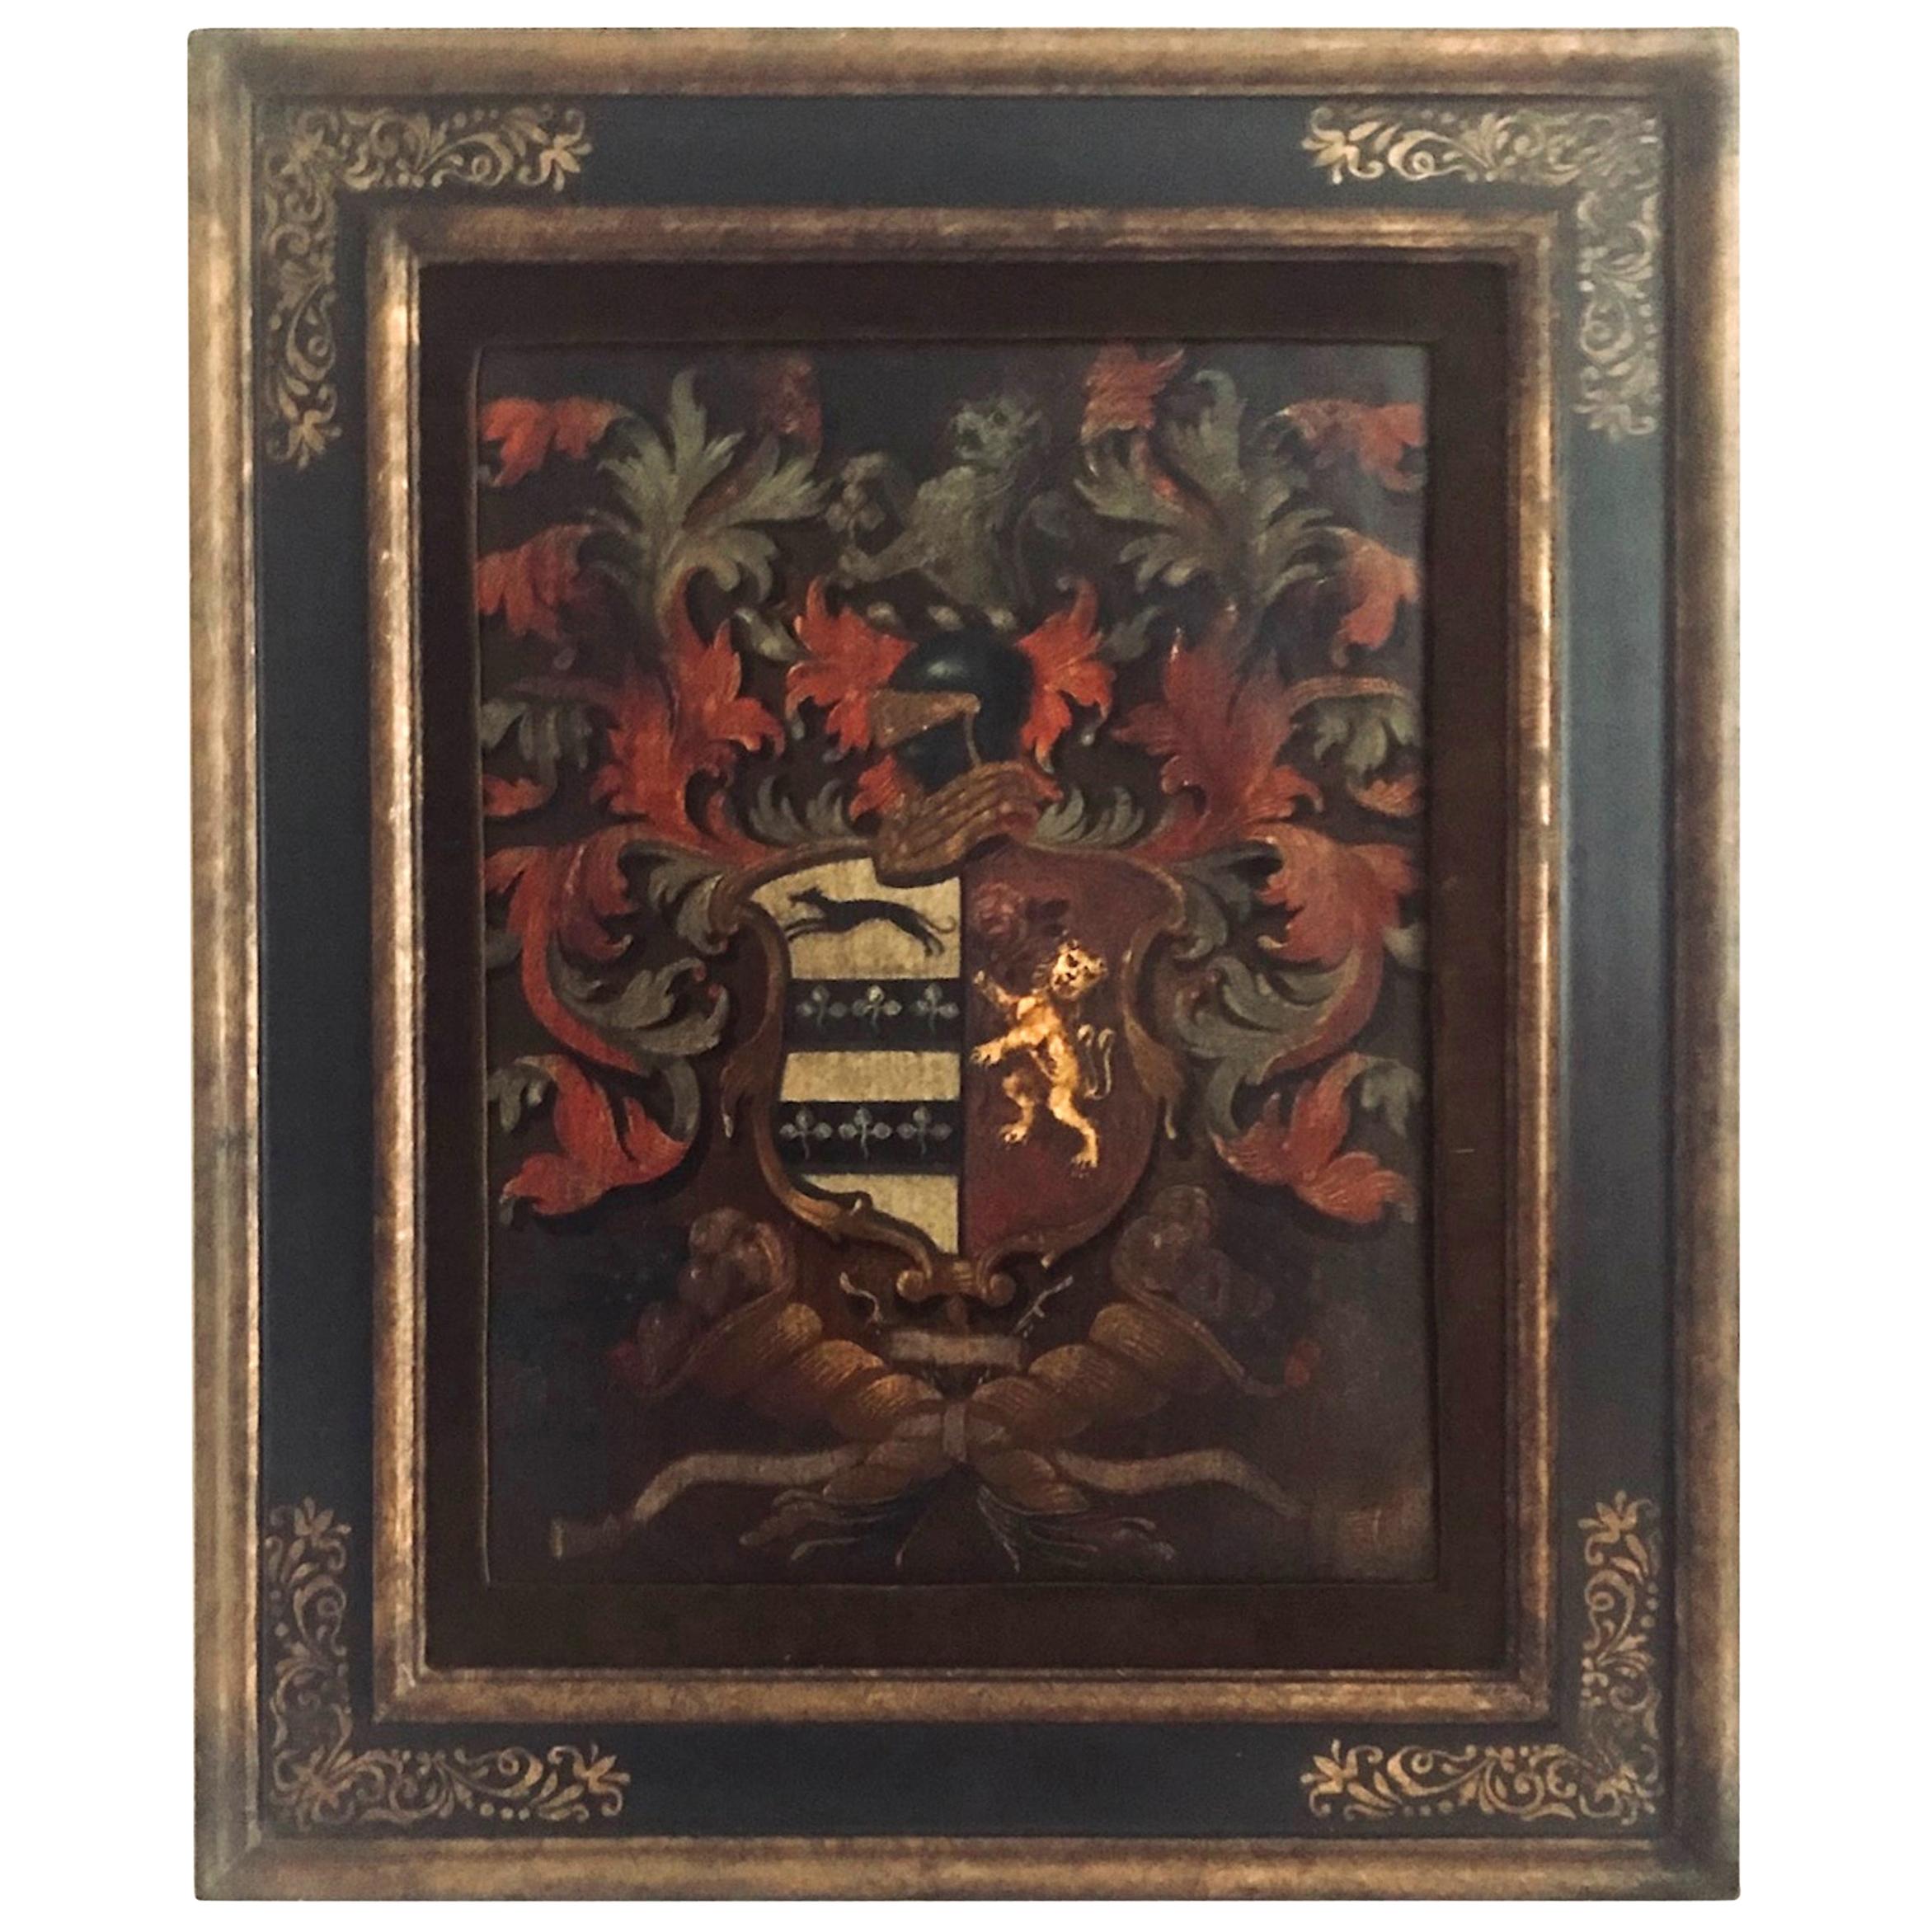 Ancienne huile sur panneau peinte des armoiries de la famille Palmer 

Tableau des armoiries de la famille anglaise Palmer de Dorney Court dans le Buckinghamshire. L'écusson coloré a été peint de façon magistrale et artistique en 1824. Il est